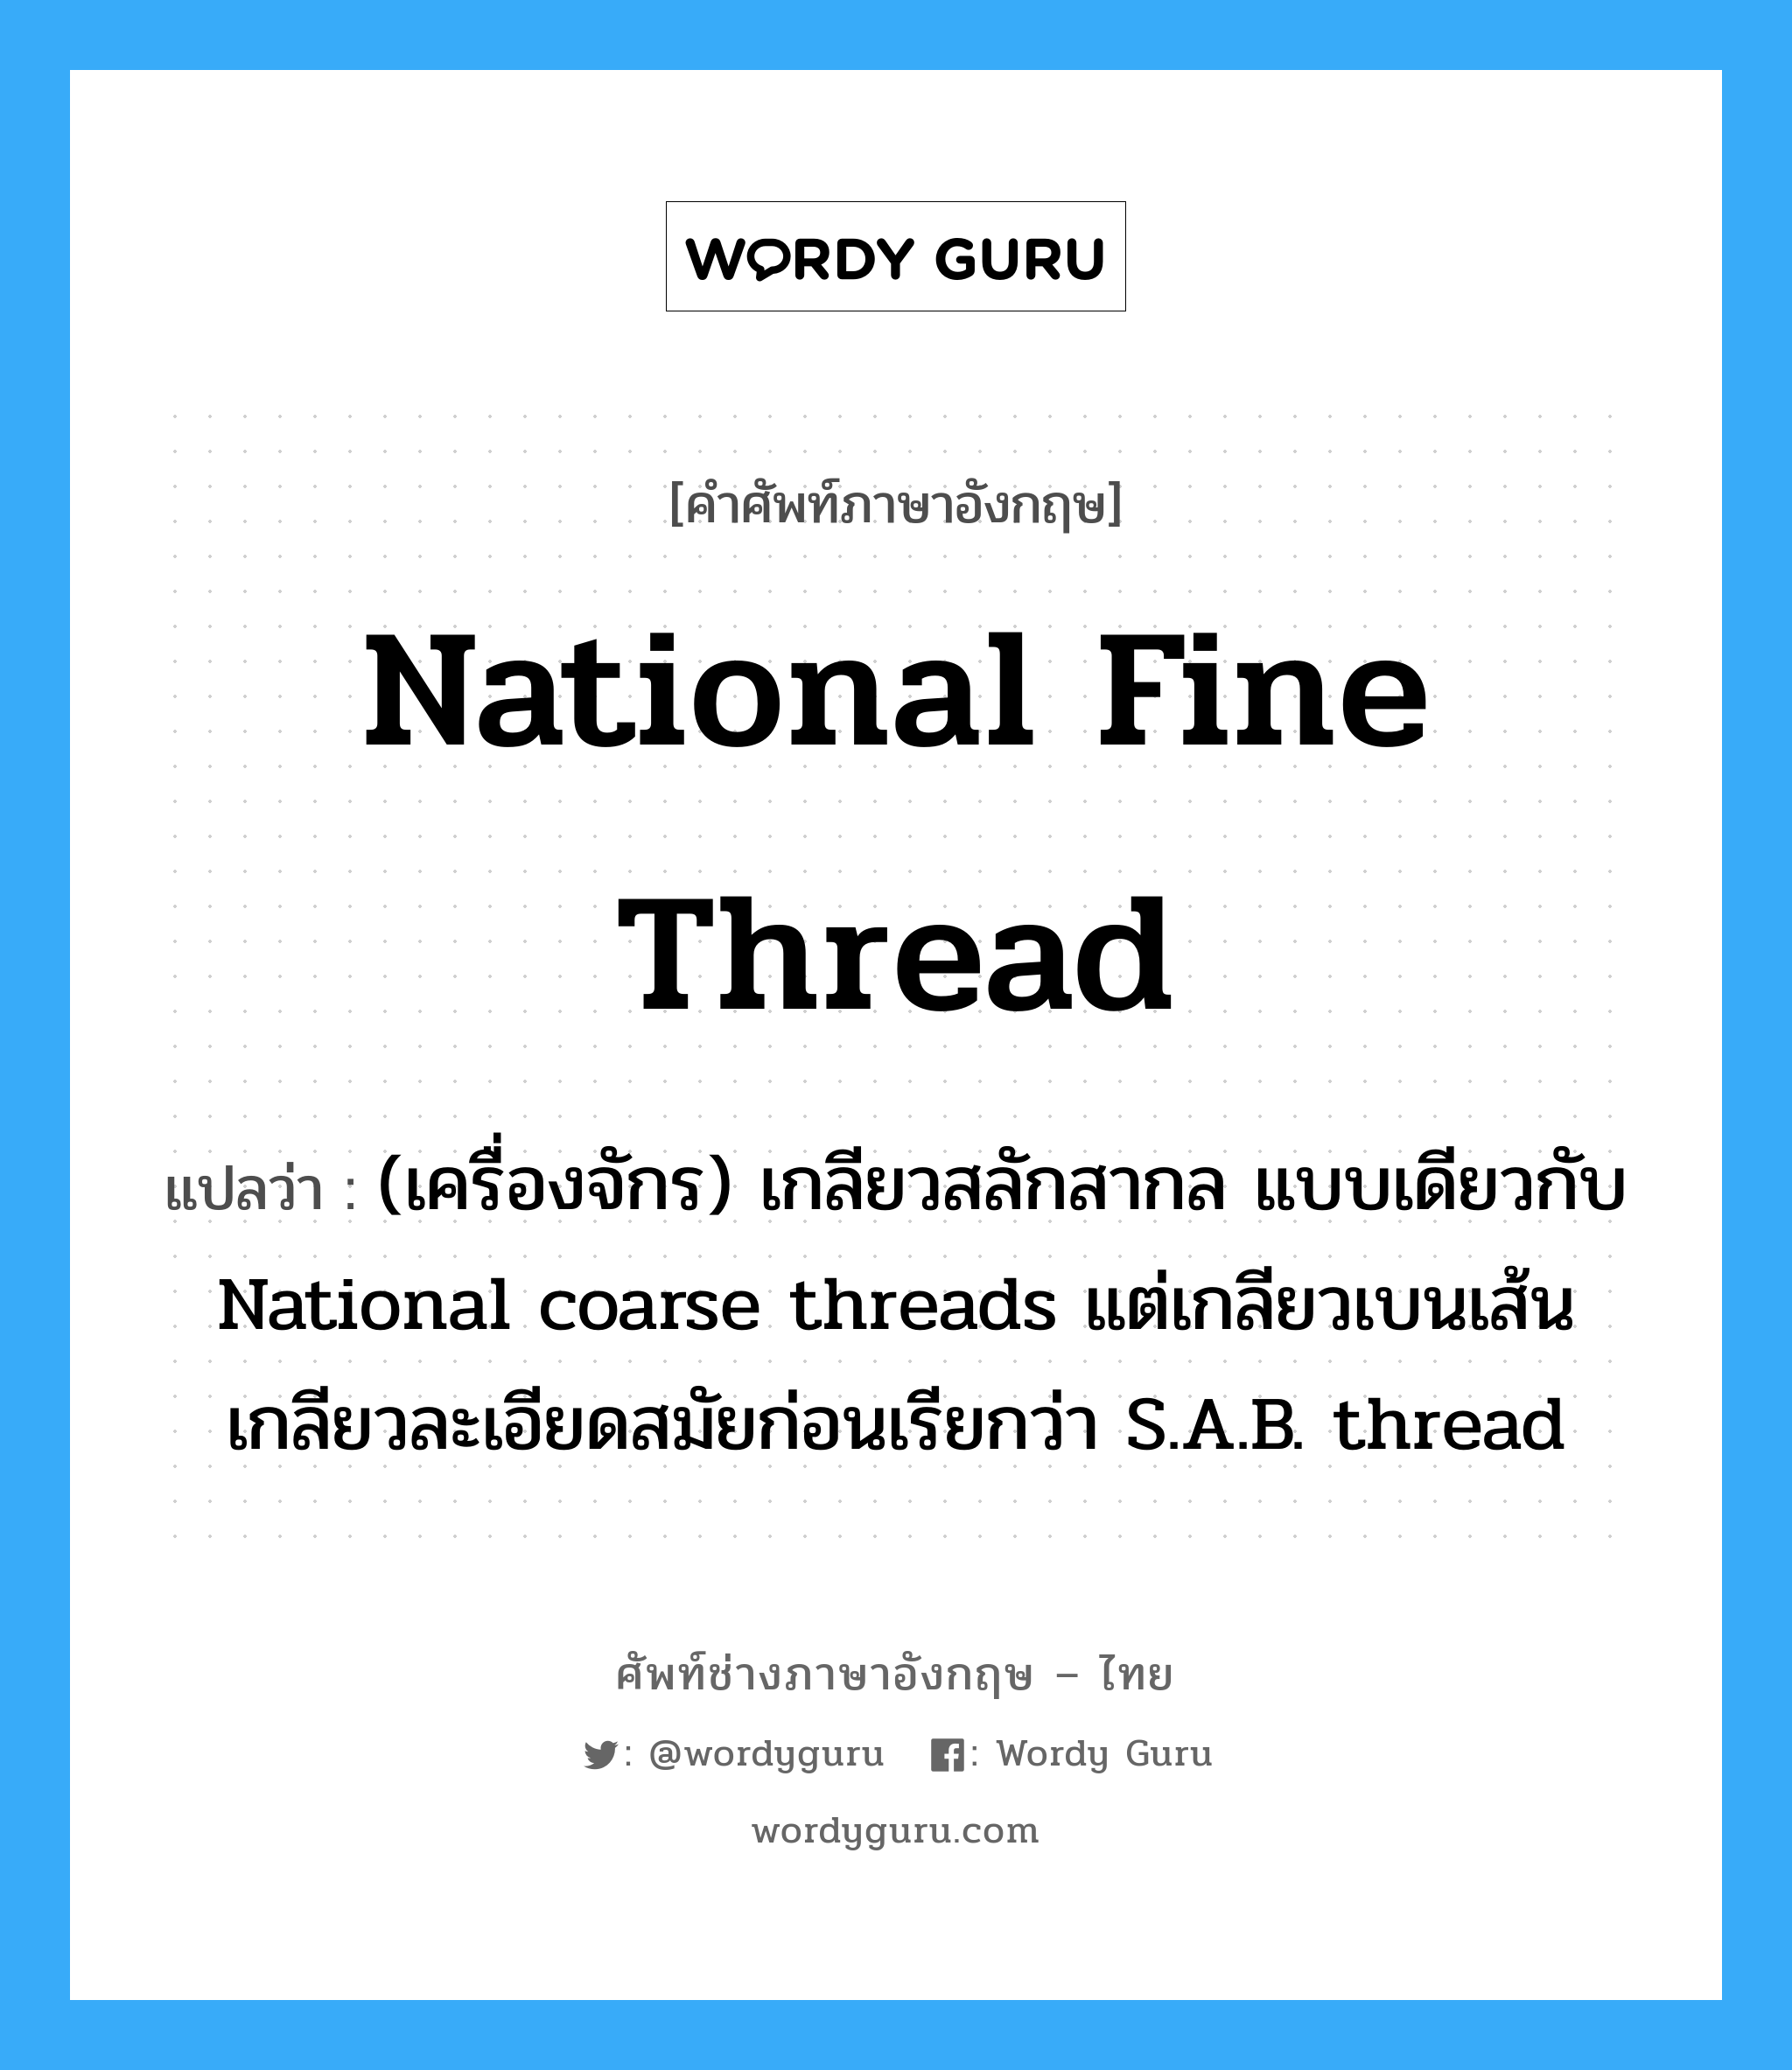 National fine thread แปลว่า?, คำศัพท์ช่างภาษาอังกฤษ - ไทย National fine thread คำศัพท์ภาษาอังกฤษ National fine thread แปลว่า (เครื่องจักร) เกลียวสลักสากล แบบเดียวกับ National coarse threads แต่เกลียวเบนเส้น เกลียวละเอียดสมัยก่อนเรียกว่า S.A.B. thread